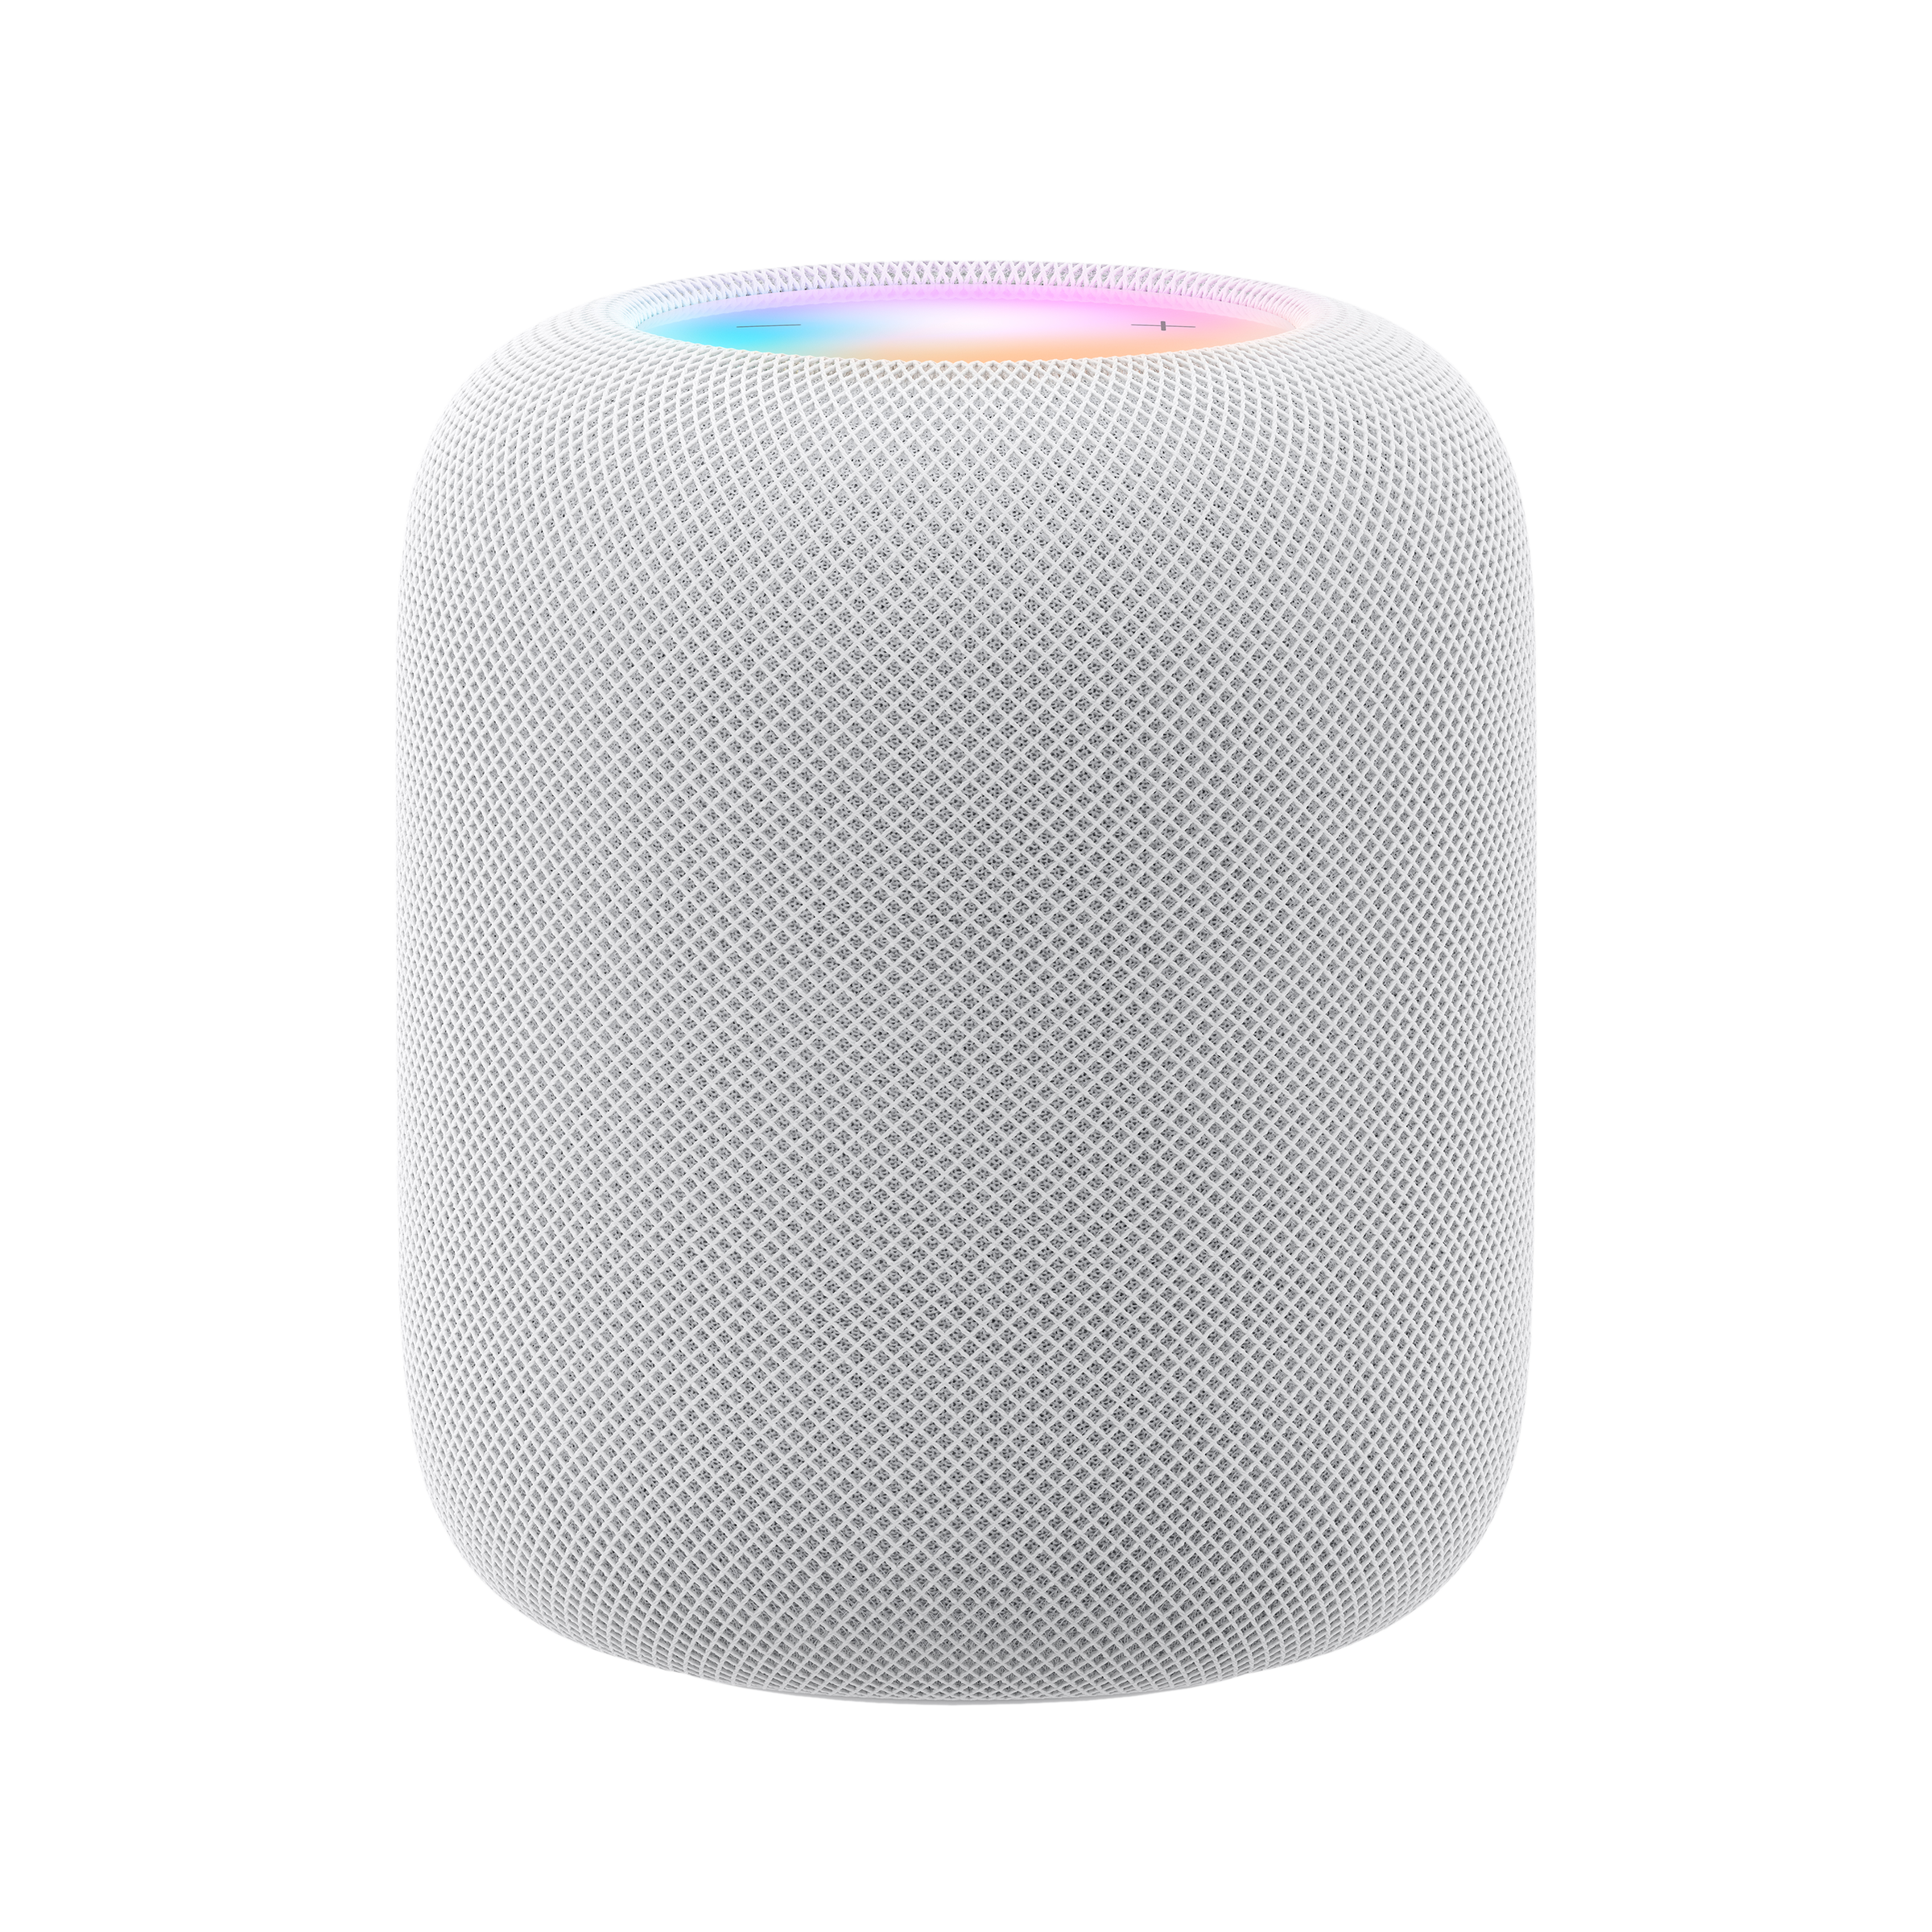 Apple HomePod (2nd Gen)